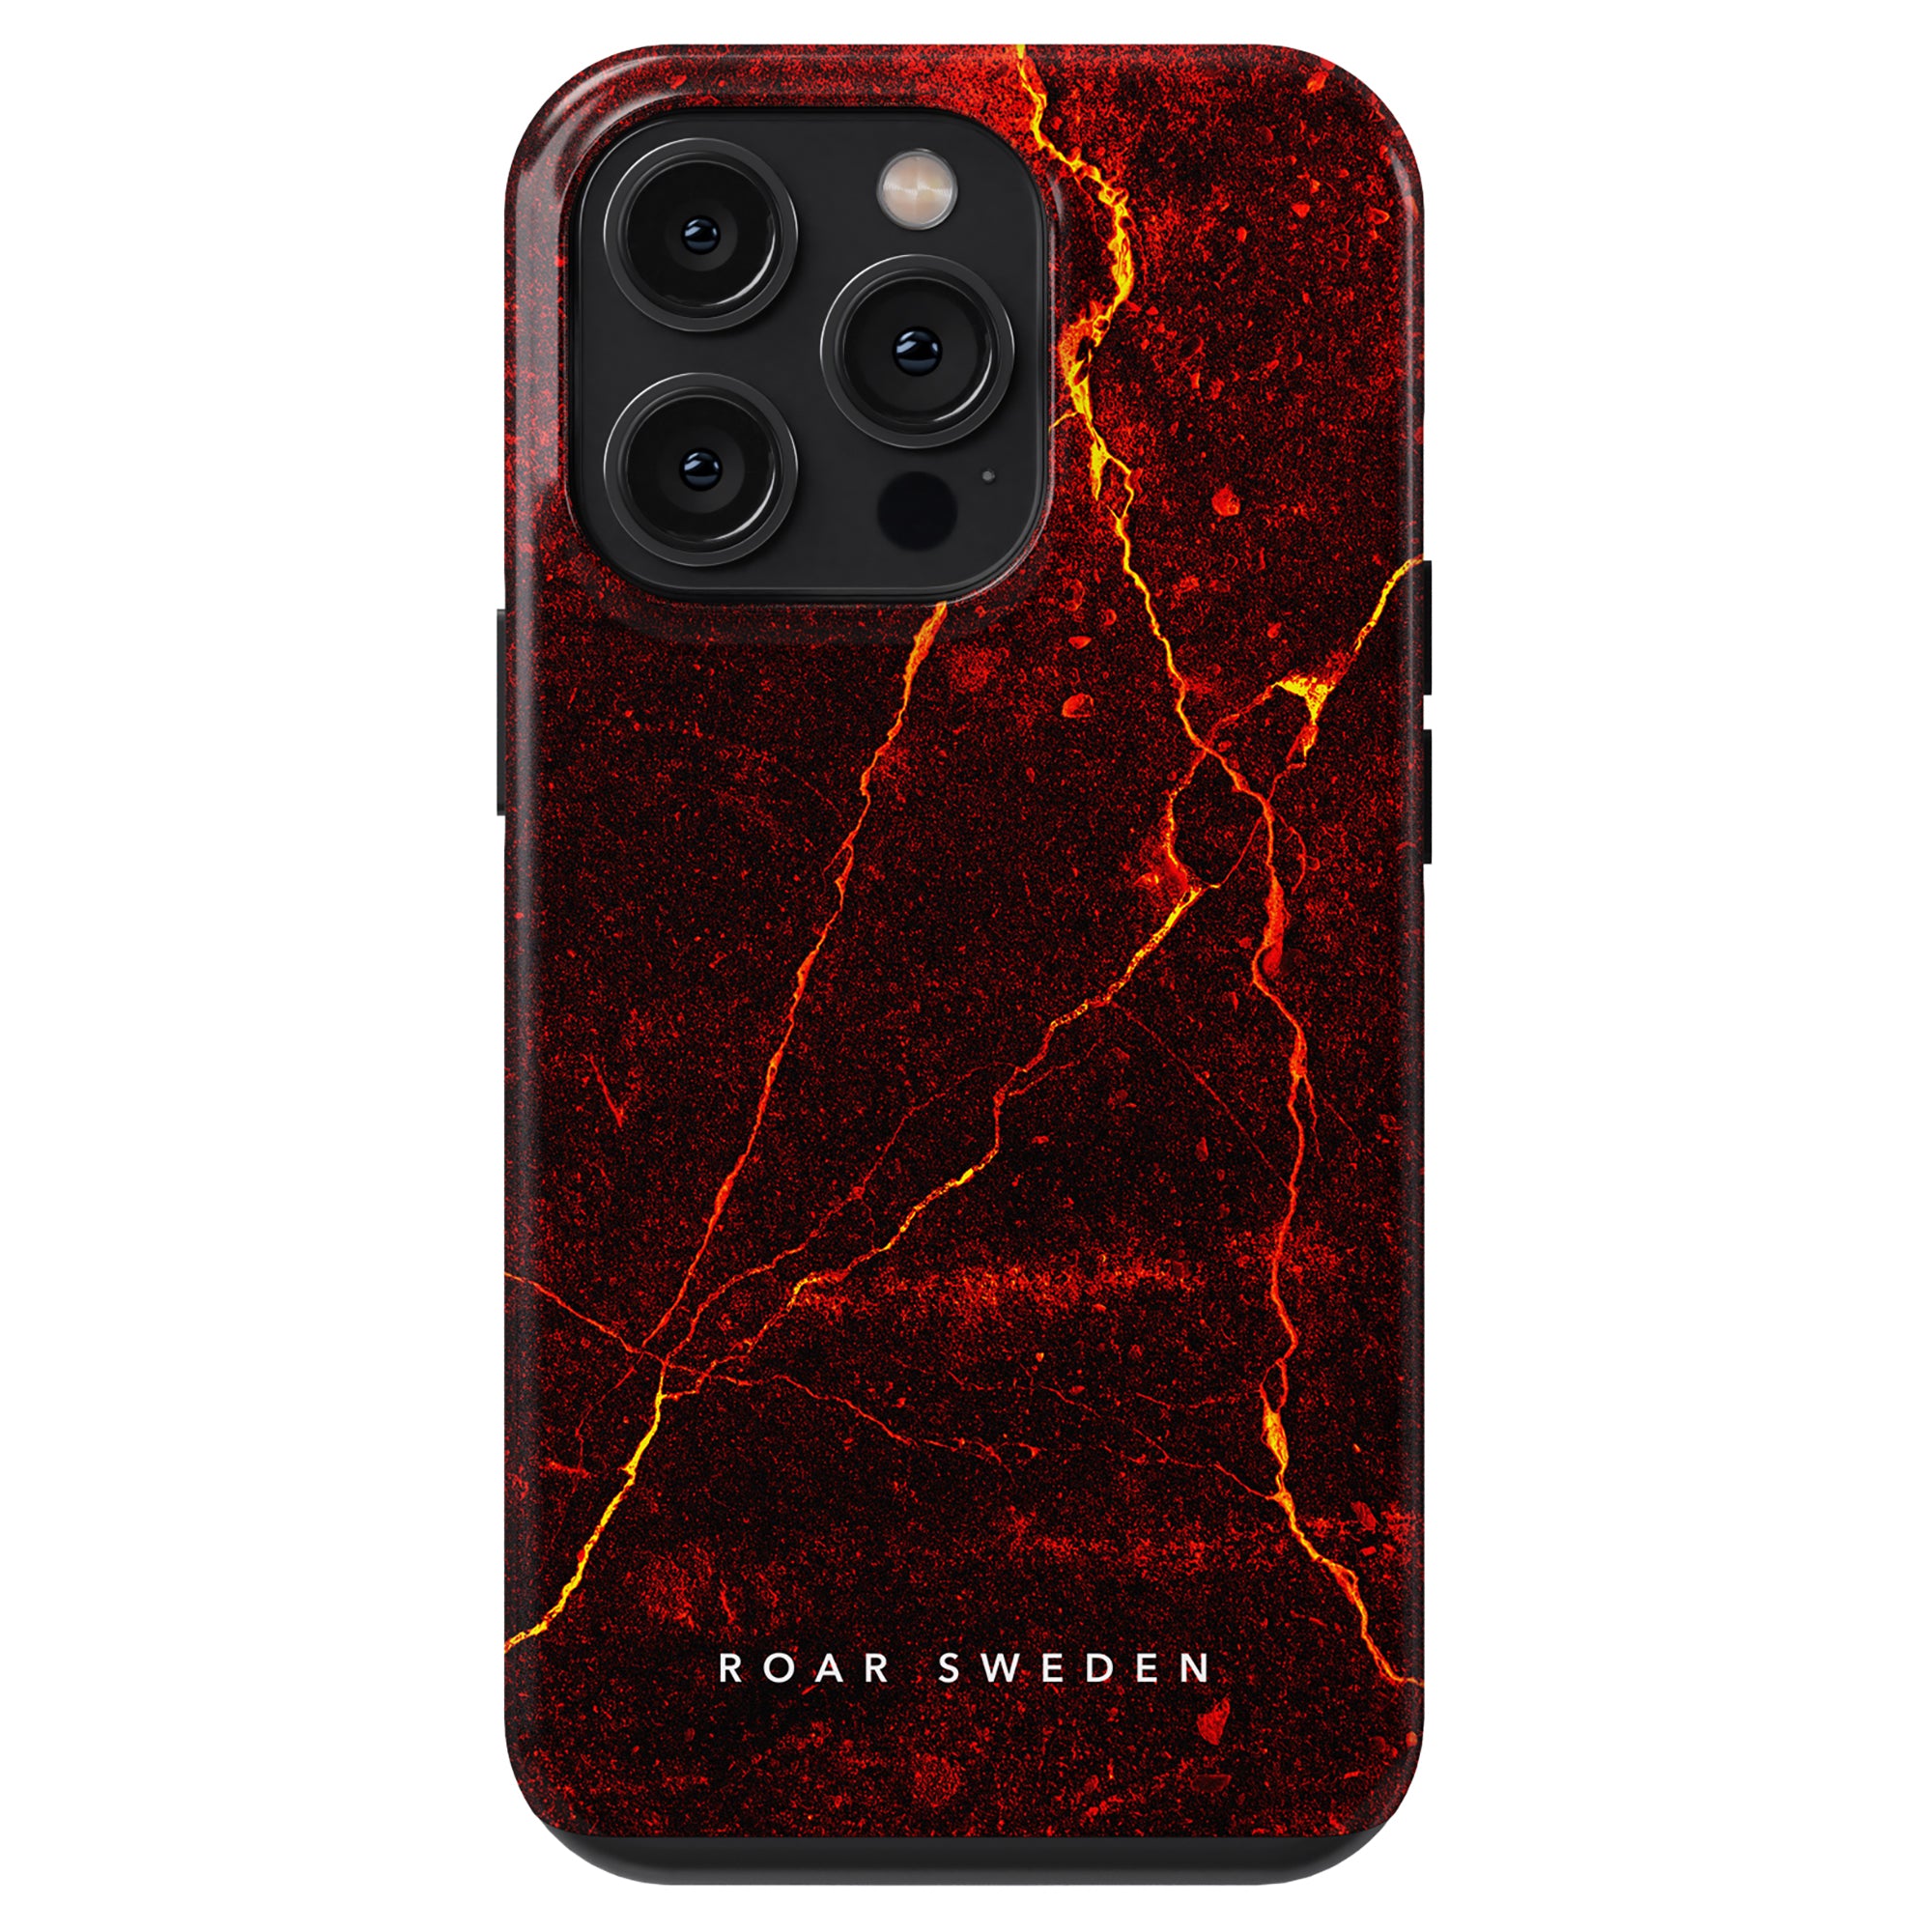 En röd och svart smartphone Caldera - Tufft fodral med ett elegant mönster.